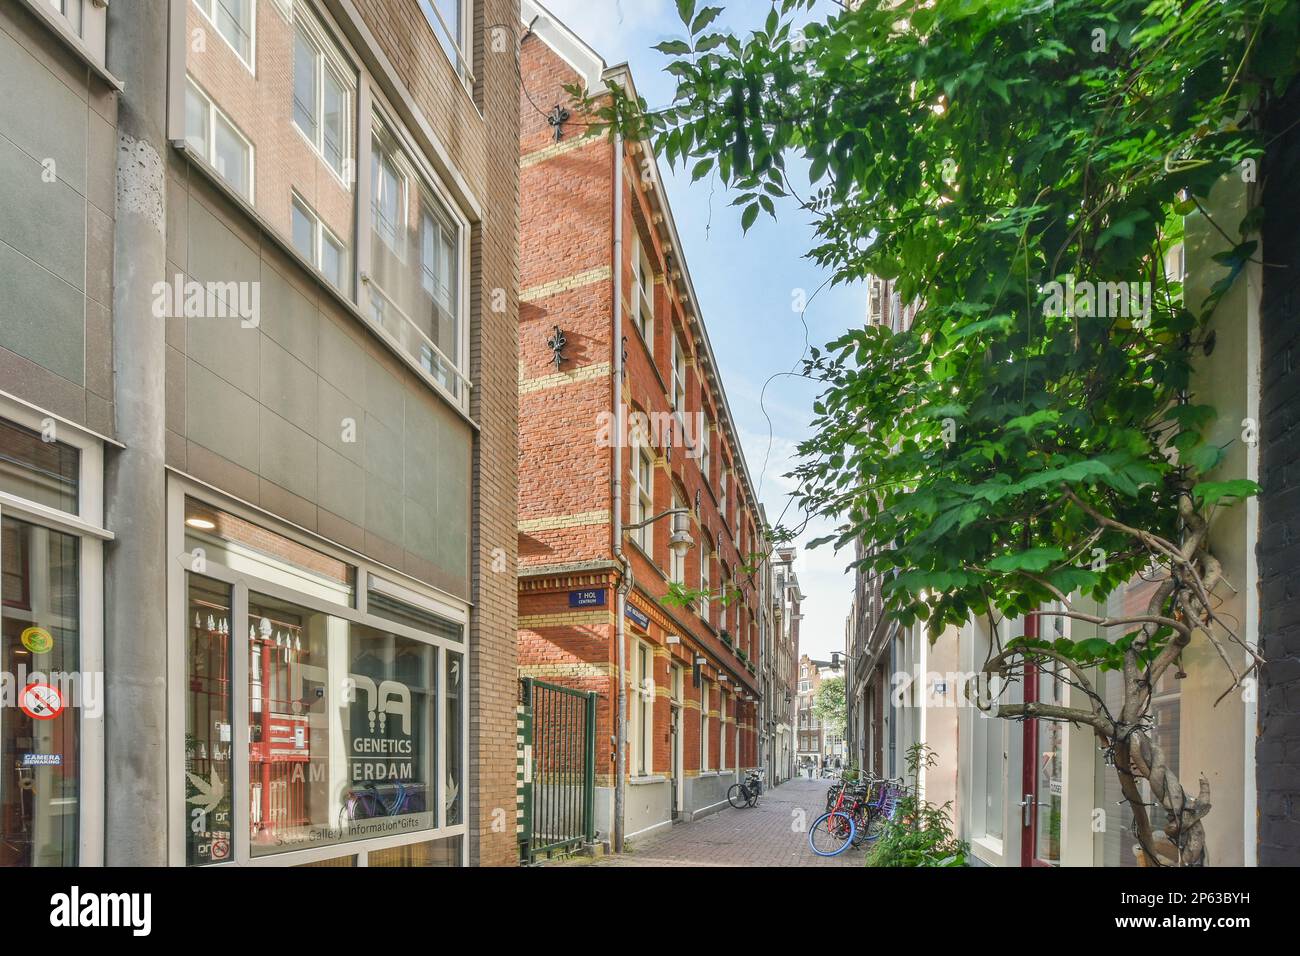 Amsterdam, pays-Bas - 10 avril, 2021: Une rue de la ville avec des bâtiments en arrière-plan et des gens qui marchent dans les allées de chaque côté, il ya un panneau qui dit Banque D'Images